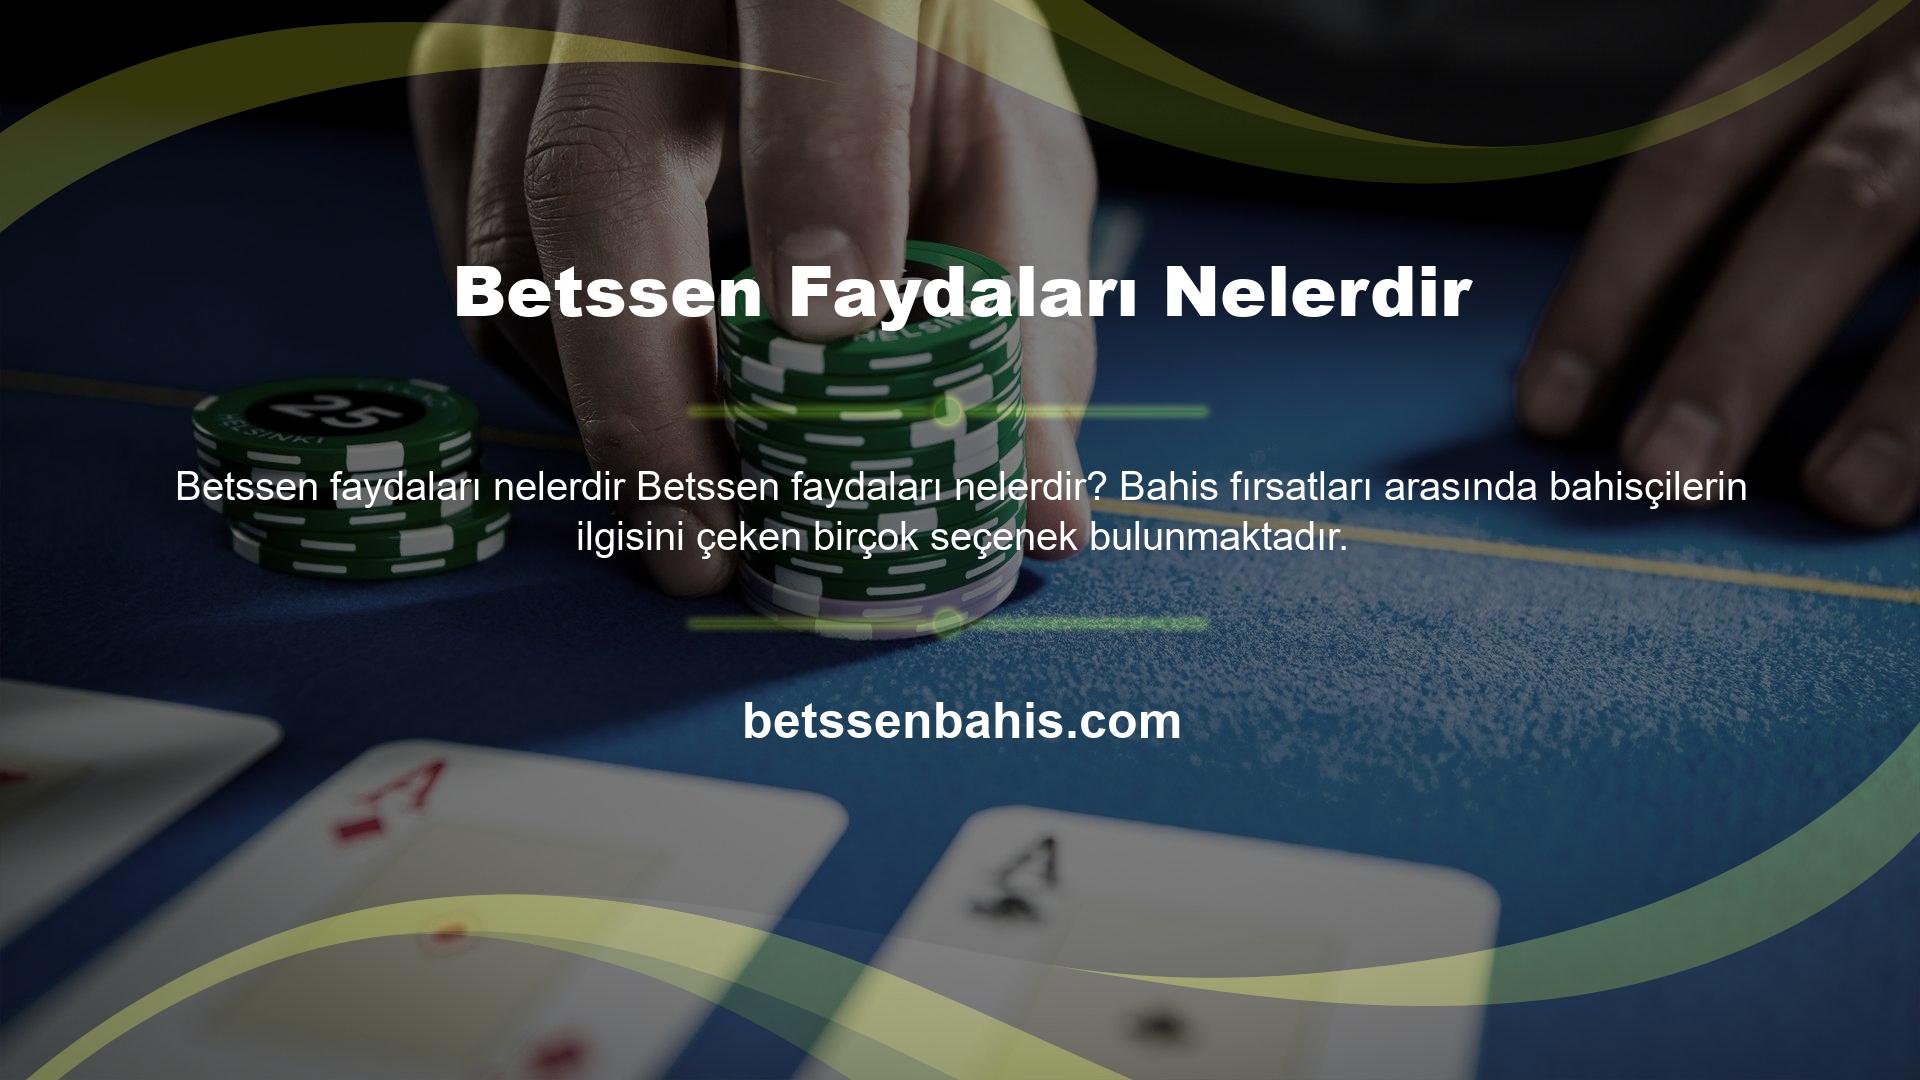 Betssen canlı bahis sitesi, Türkiye'de canlı bahis sektörünün en popüler çevrimiçi bahis sitelerinden biridir ve düşük maliyetle çok sayıda bahis satın almak isteyen yerli bahisçiler için kaçırılmayacak bir fırsat sunmaktadır